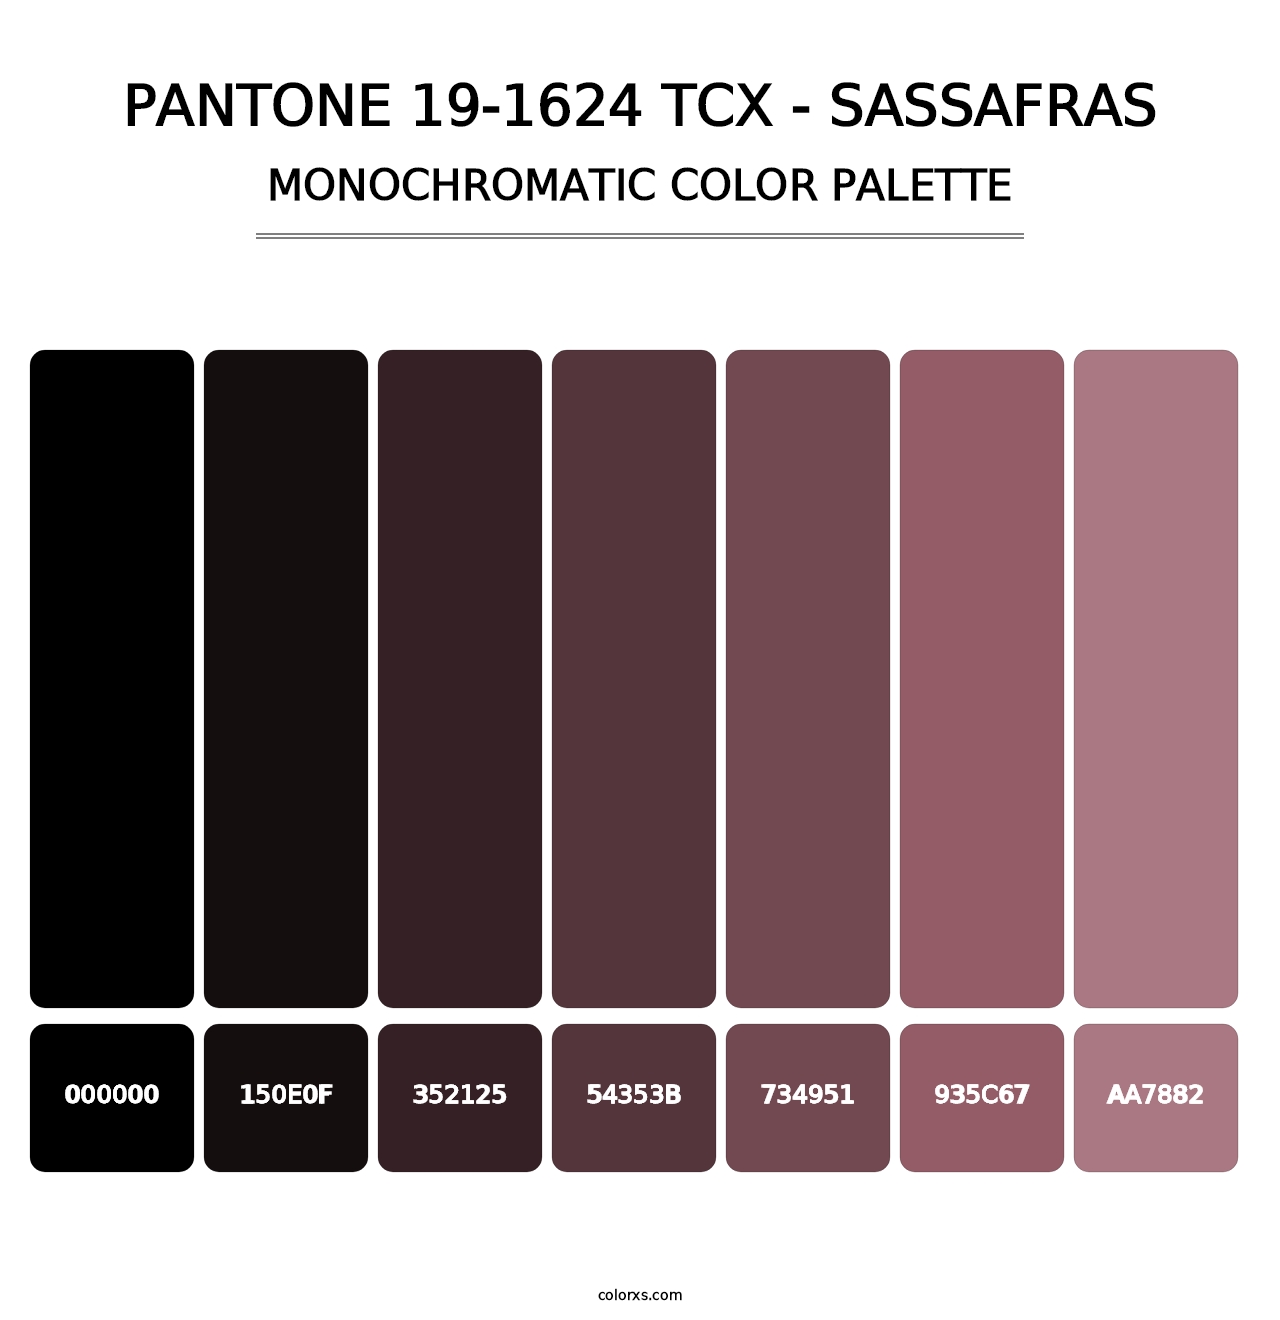 PANTONE 19-1624 TCX - Sassafras - Monochromatic Color Palette